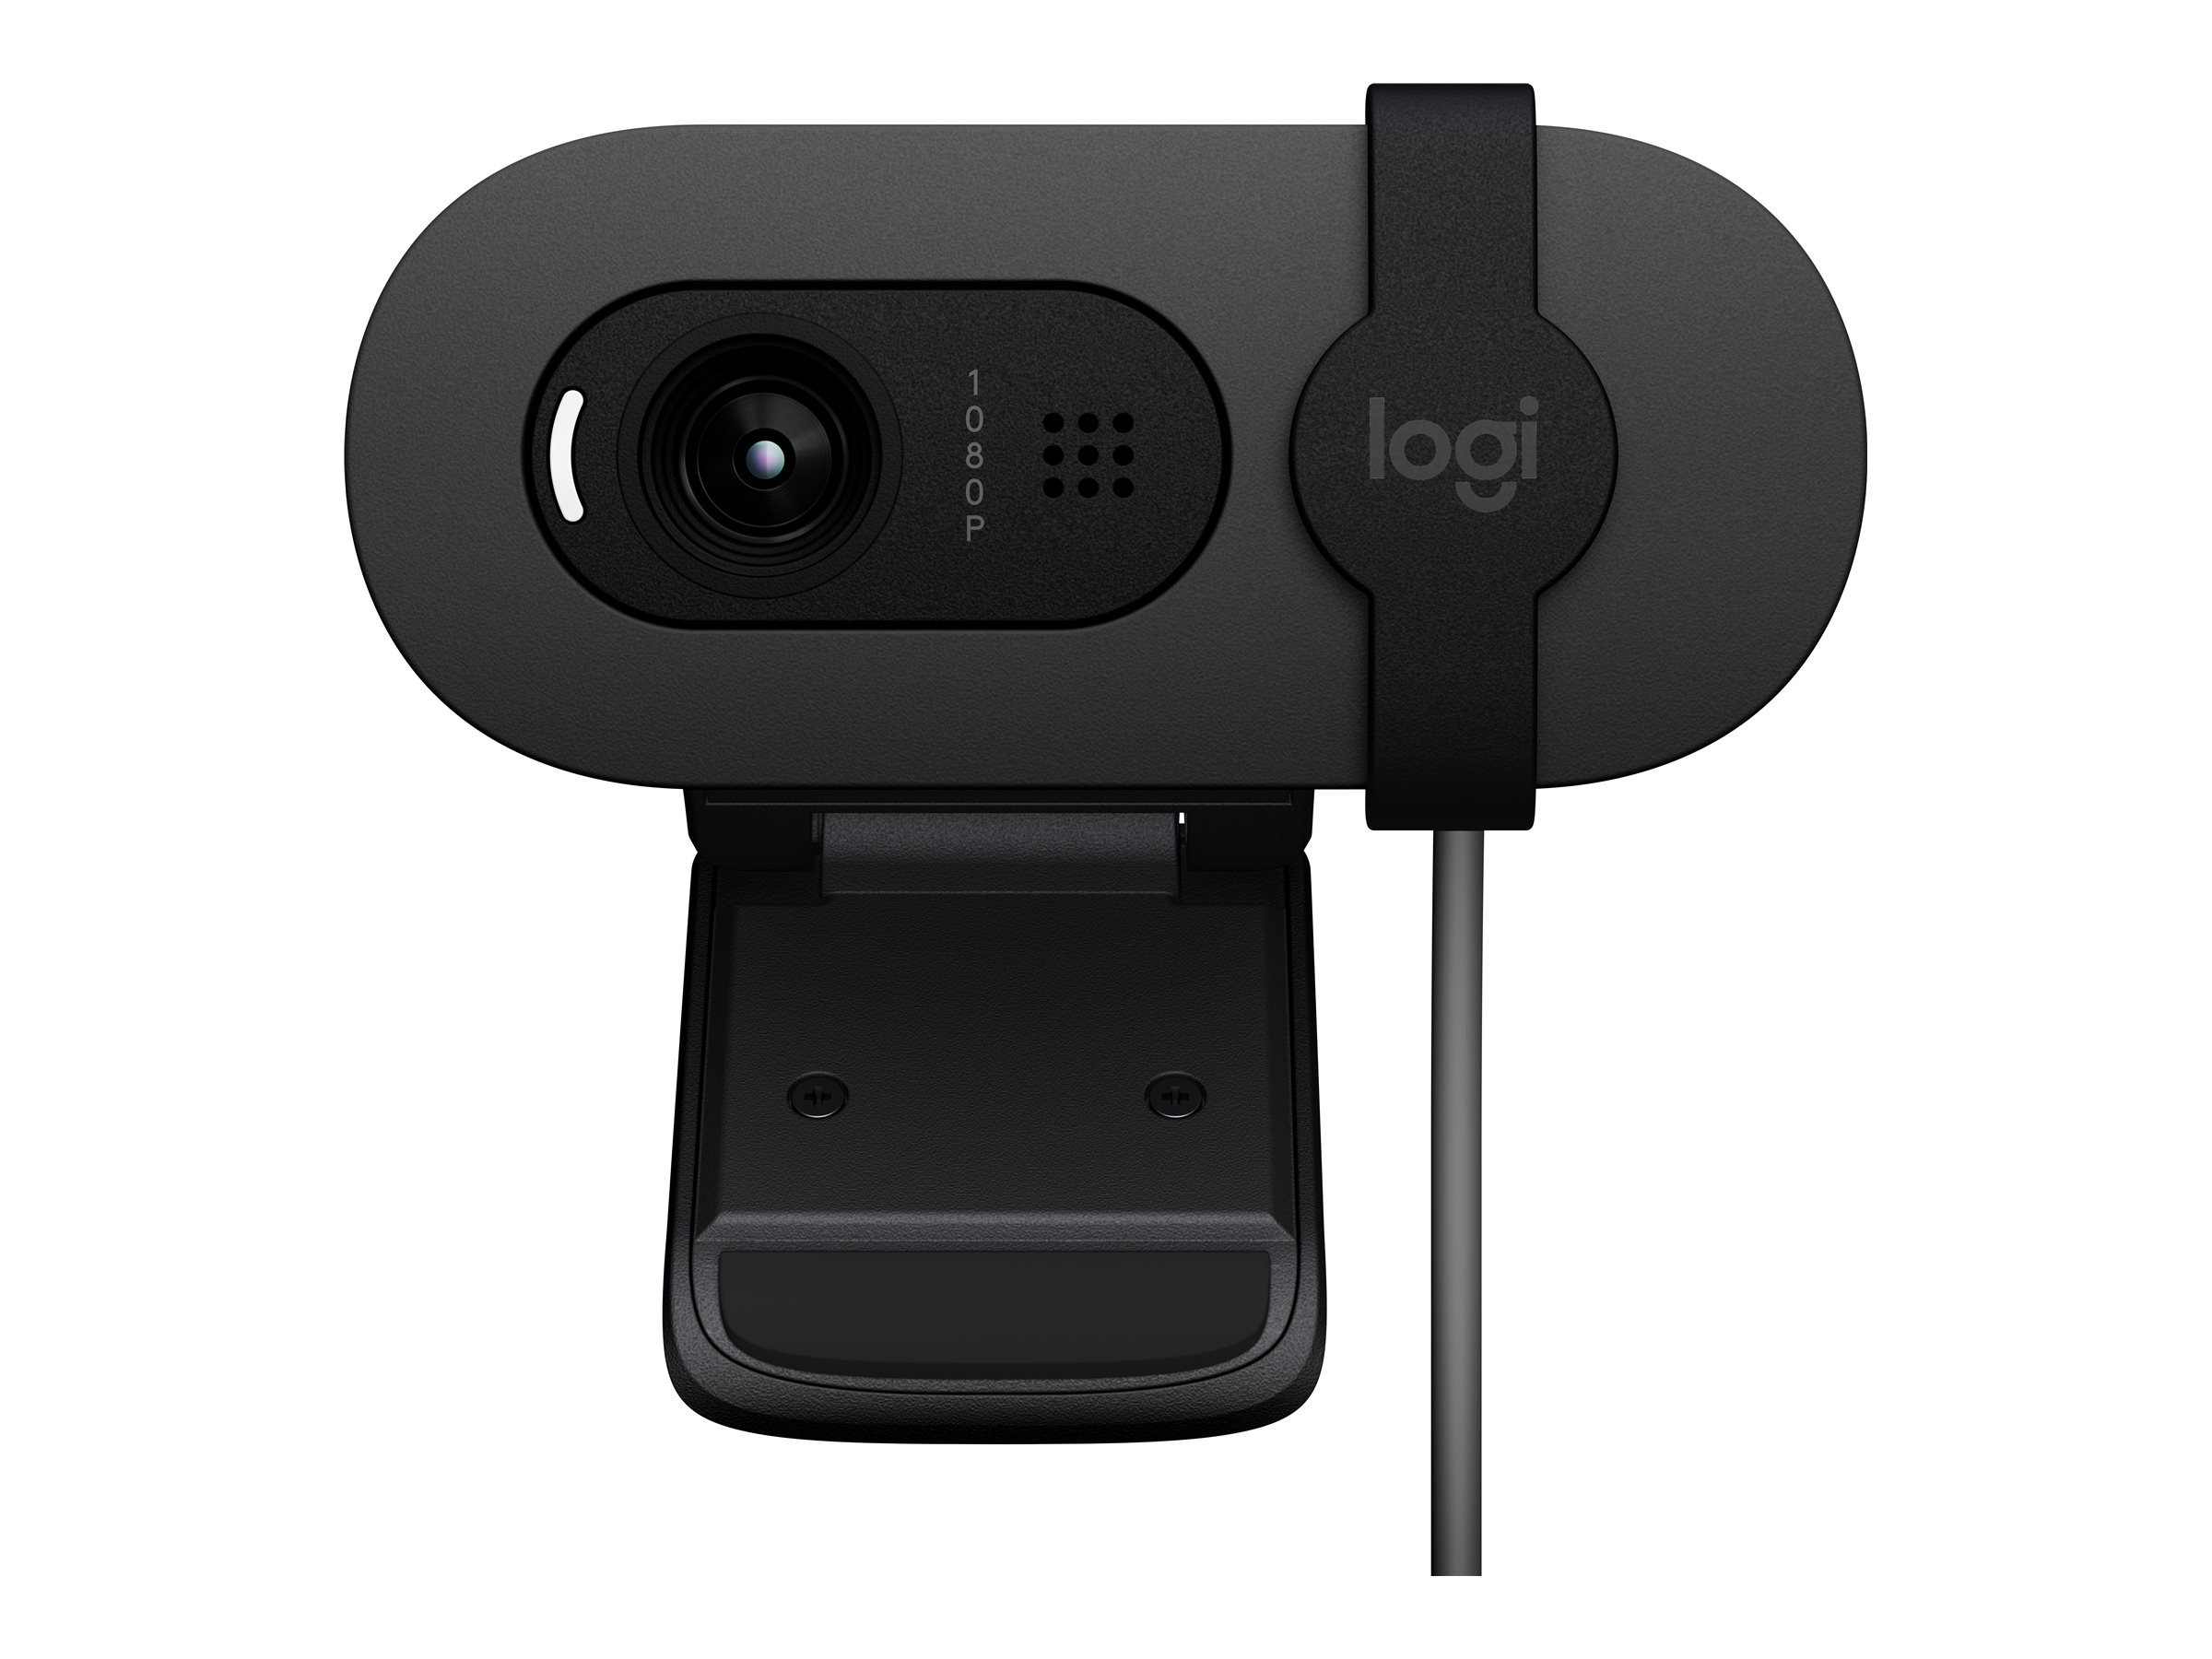 Logitech BRIO 105 - Webcam - Farbe - 2 MP - 1920 x 1080 - 720p, 1080p - Audio - USB